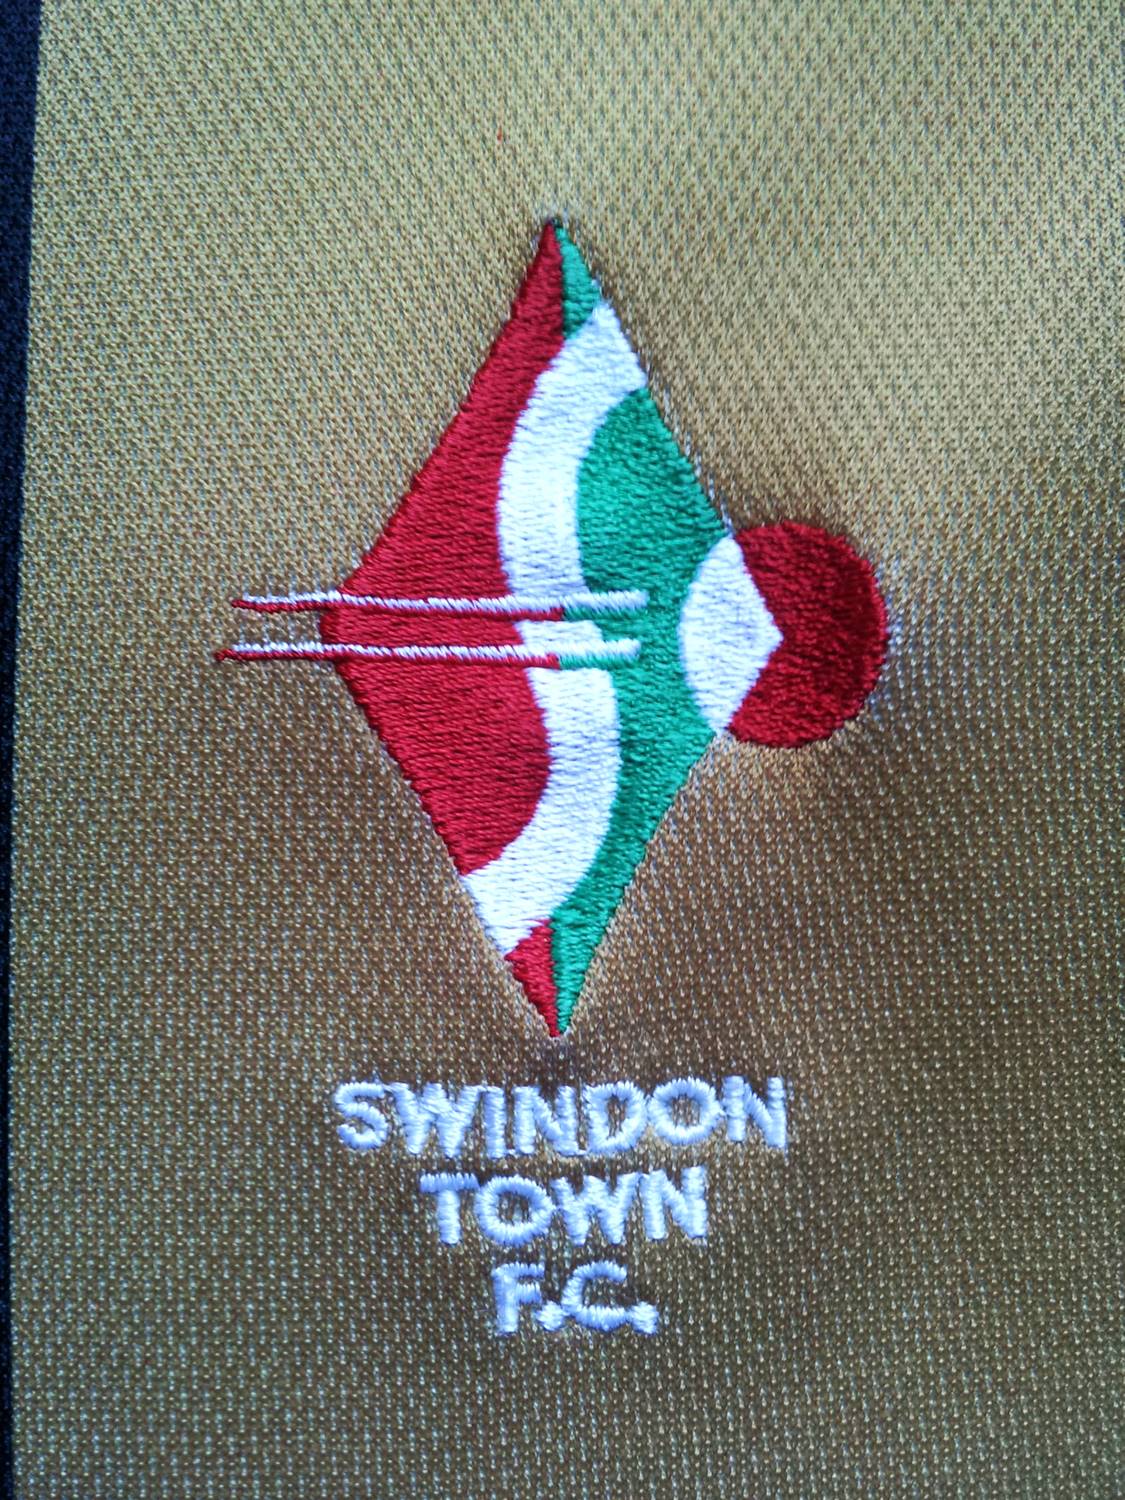 maillot de swindon town fc exterieur 2003-2004 pas cher